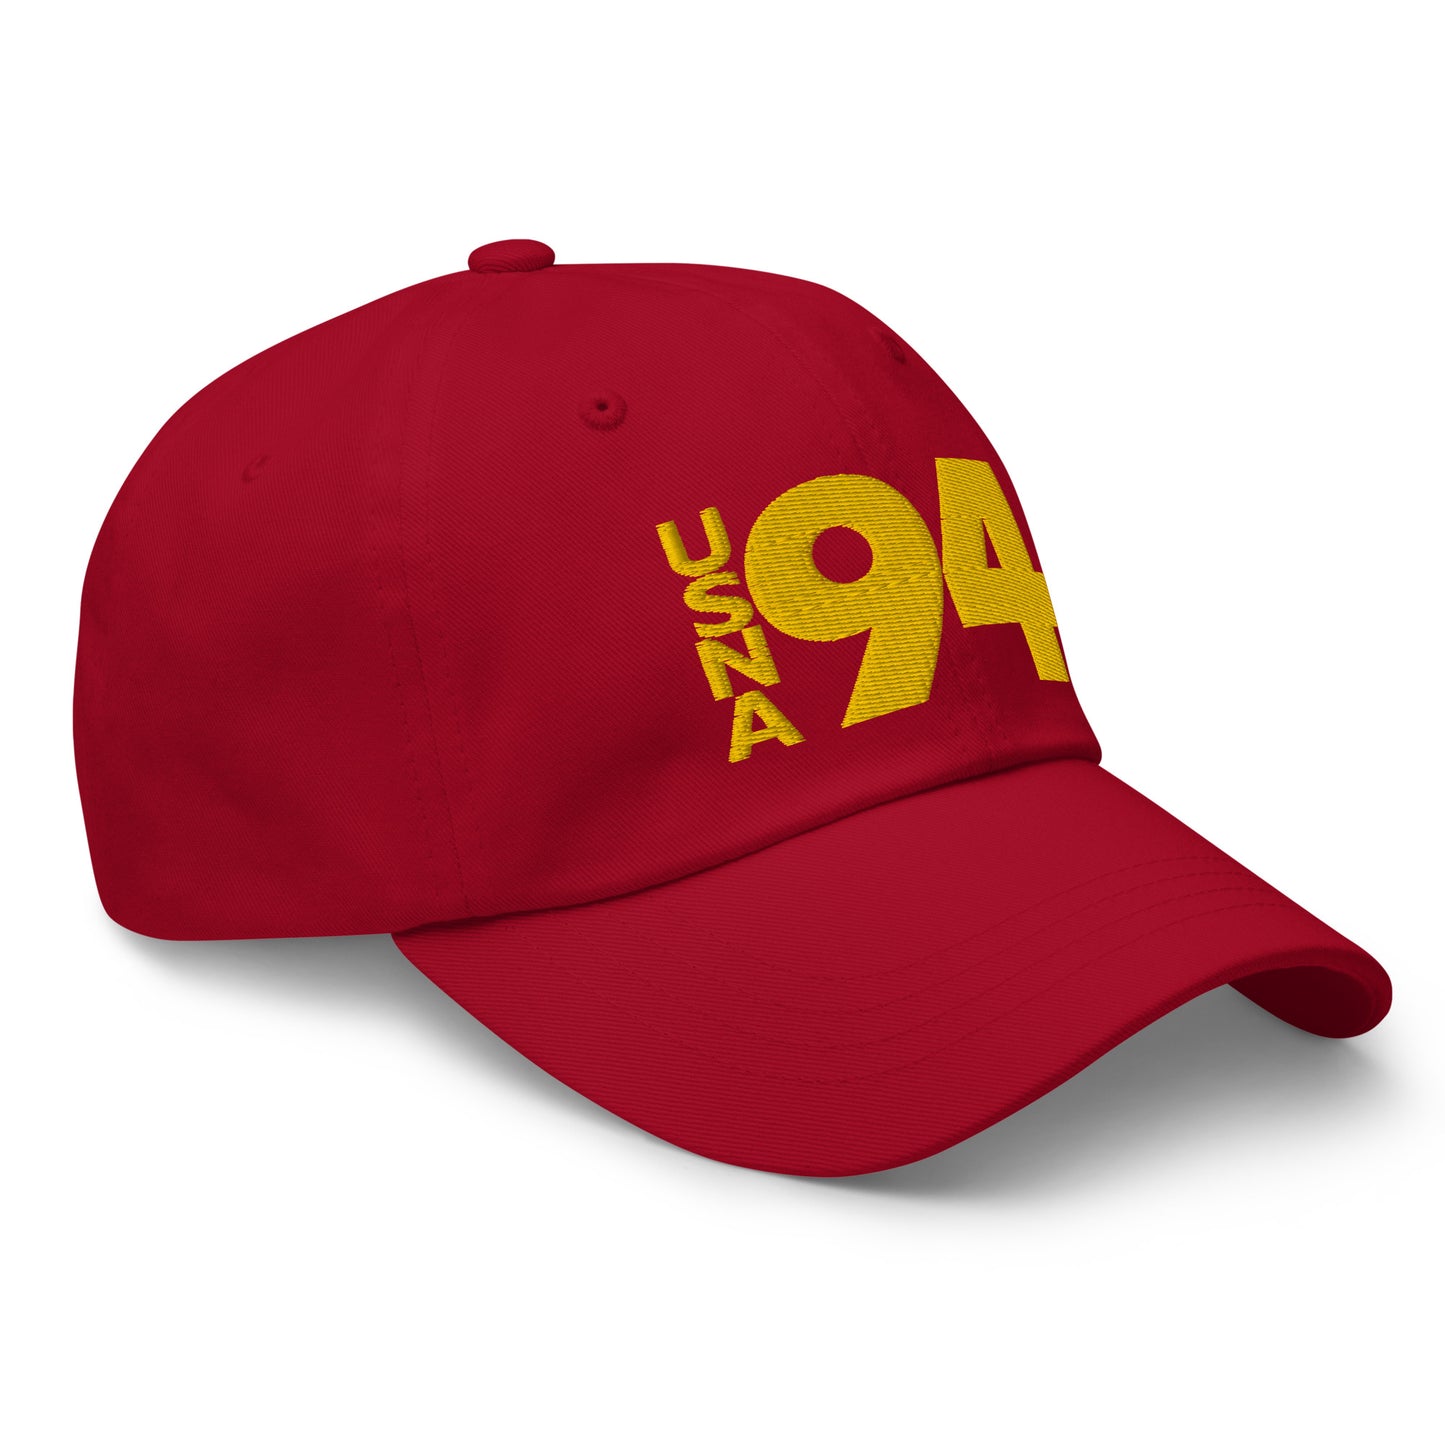 USNA '94 Hat